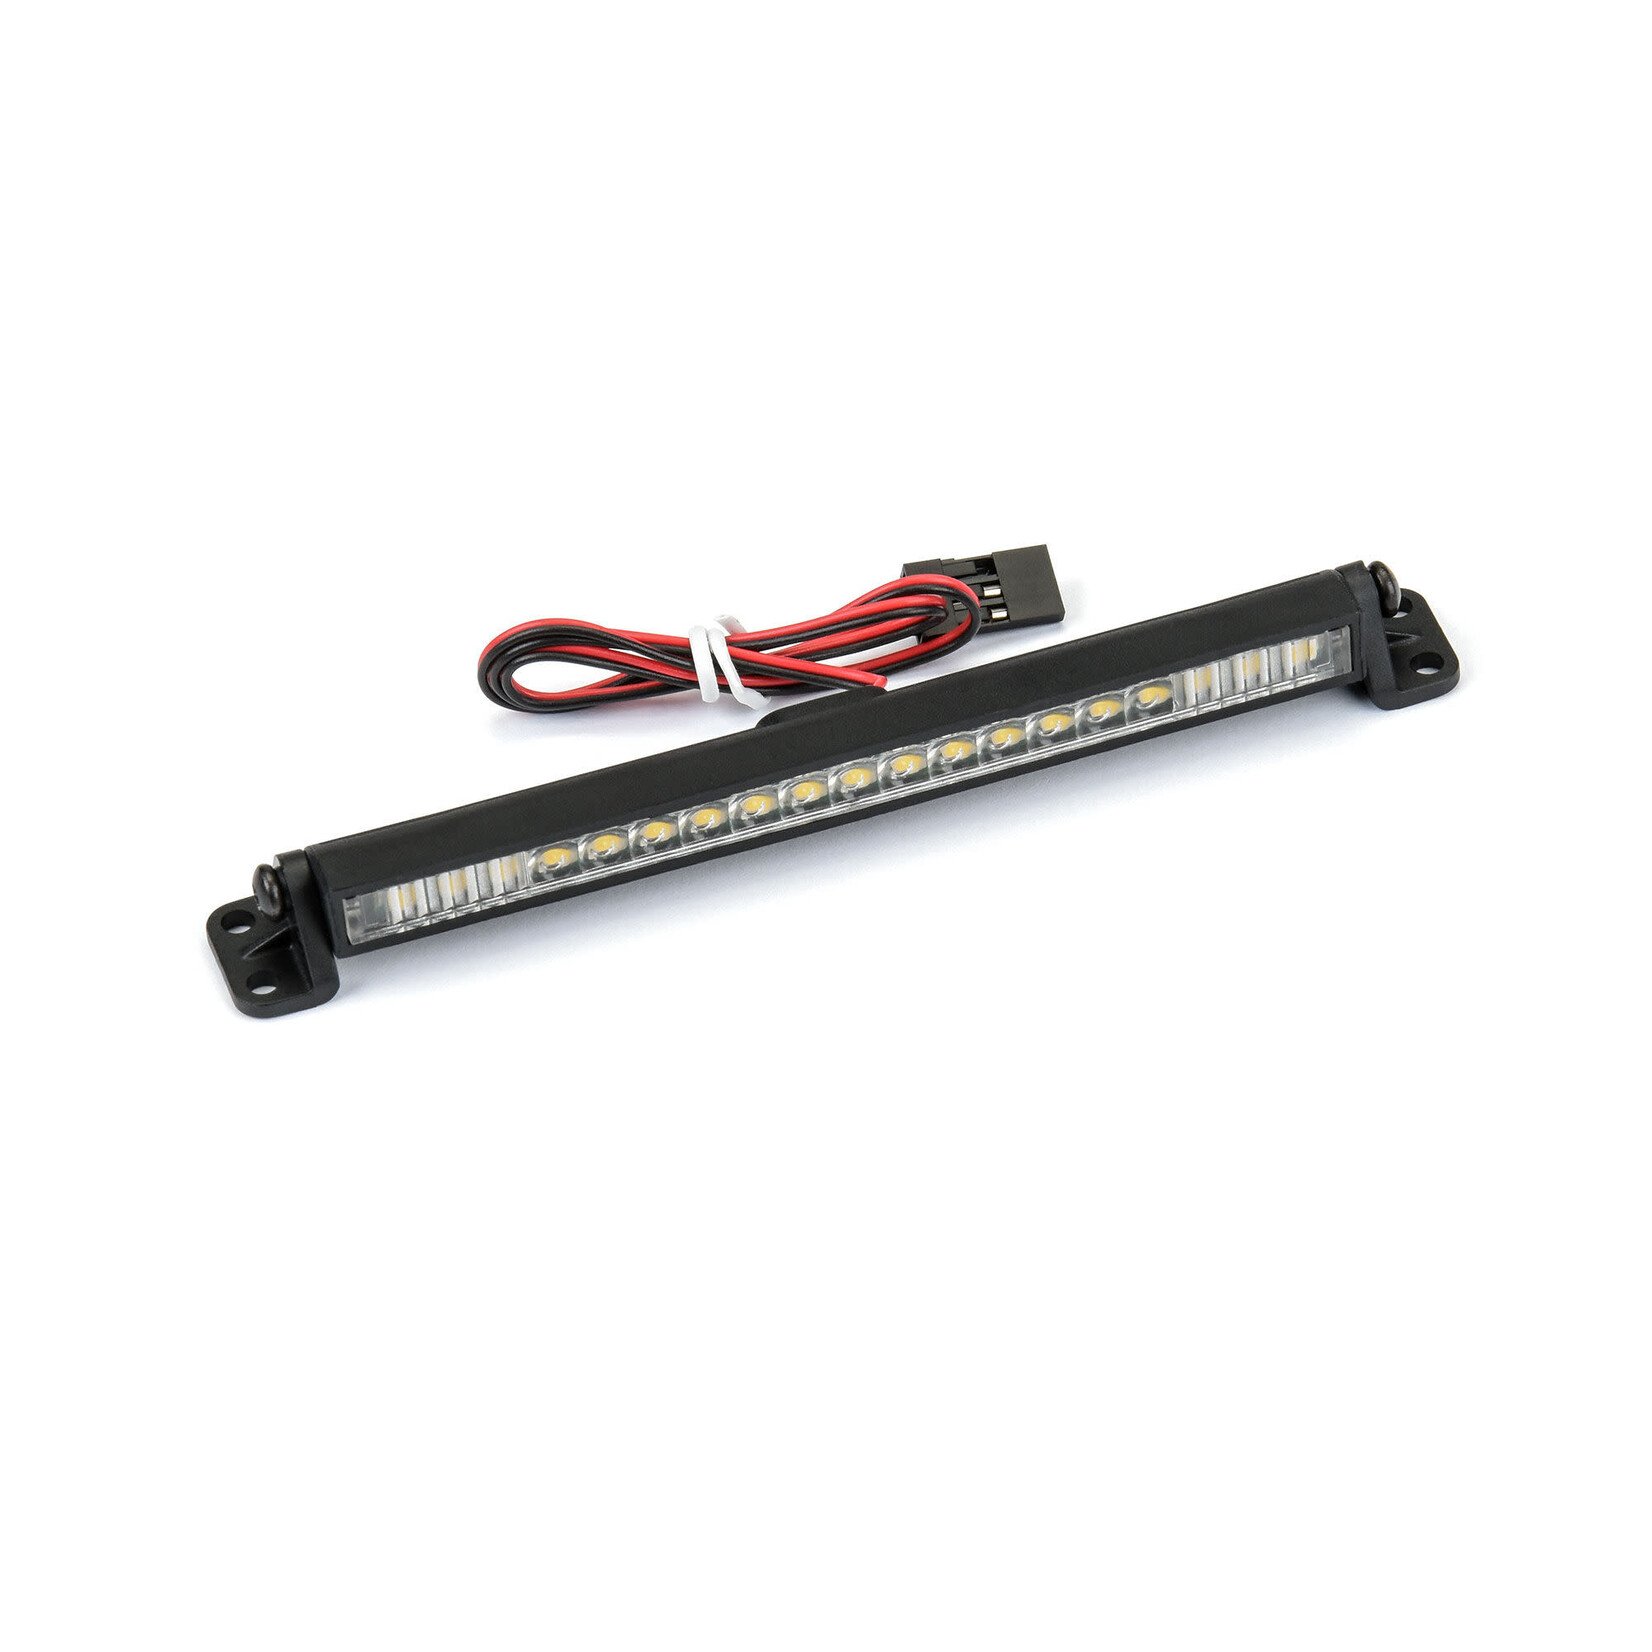 Pro-Line Pro-Line 4" Ultra-Slim LED Light Bar Kit 5V-12V (Straight) #6352-01